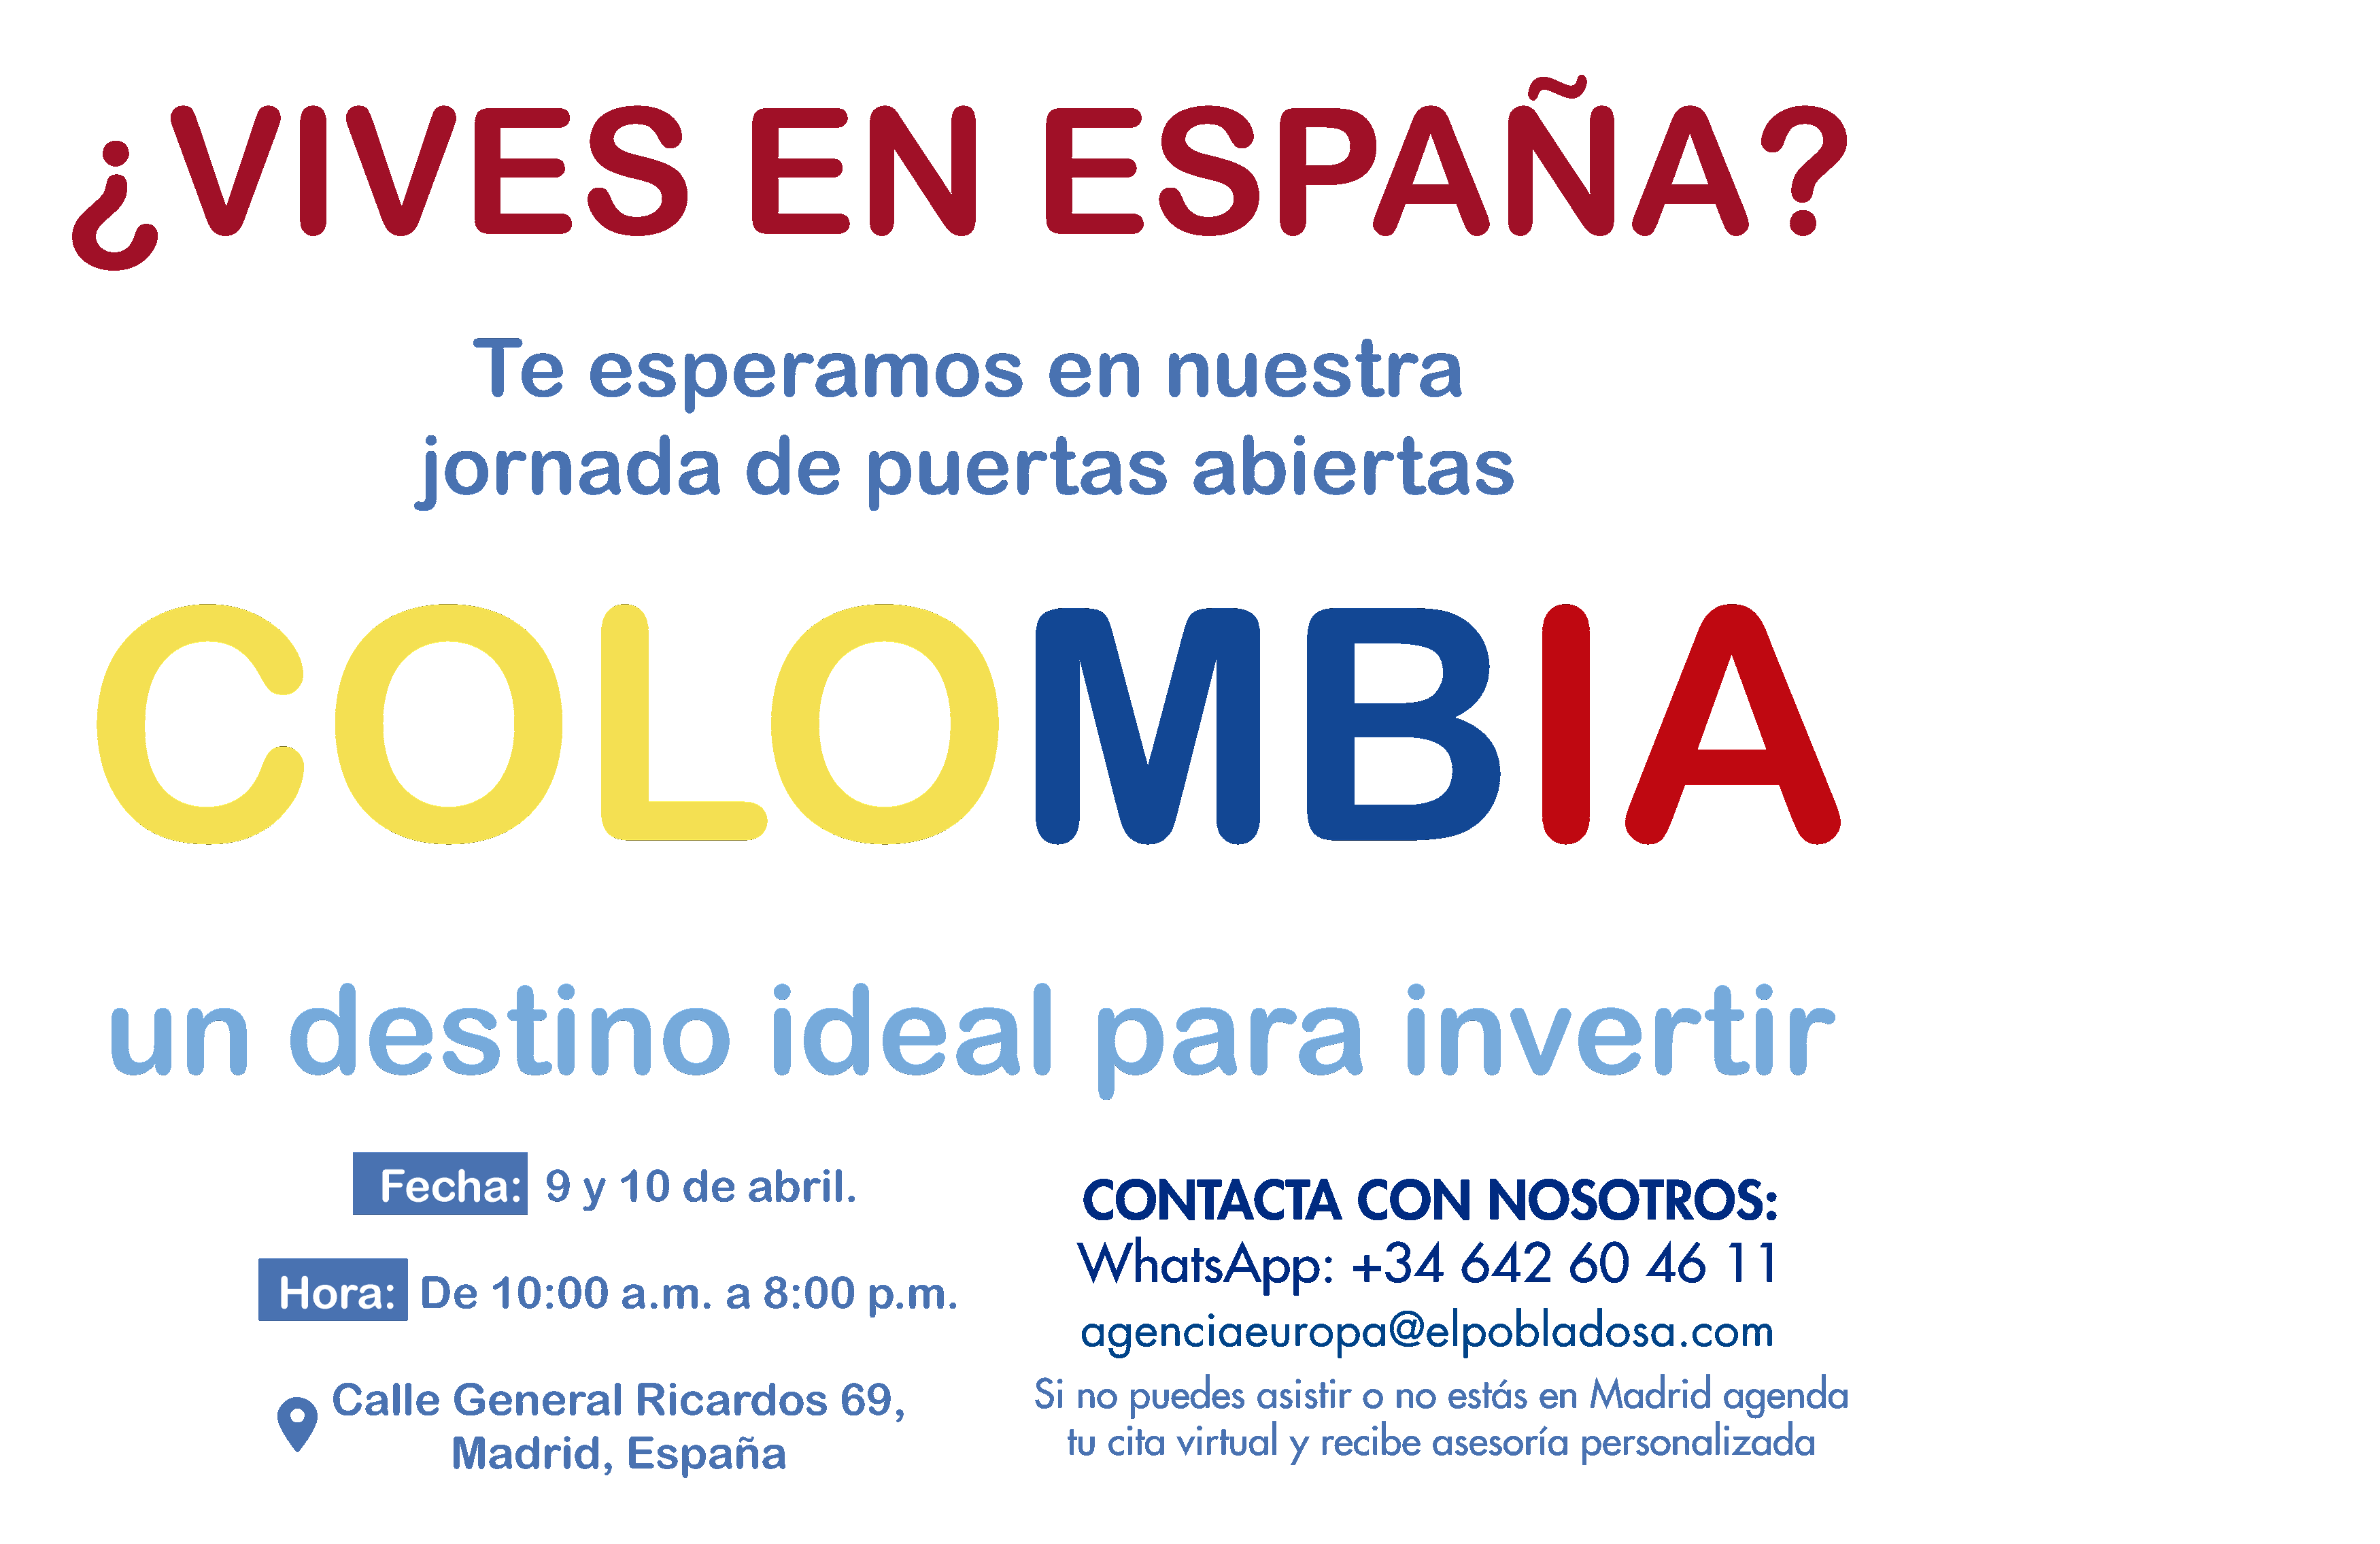 https://www.elpobladosa.com/wp-content/uploads/2022/04/texto-fondo.png